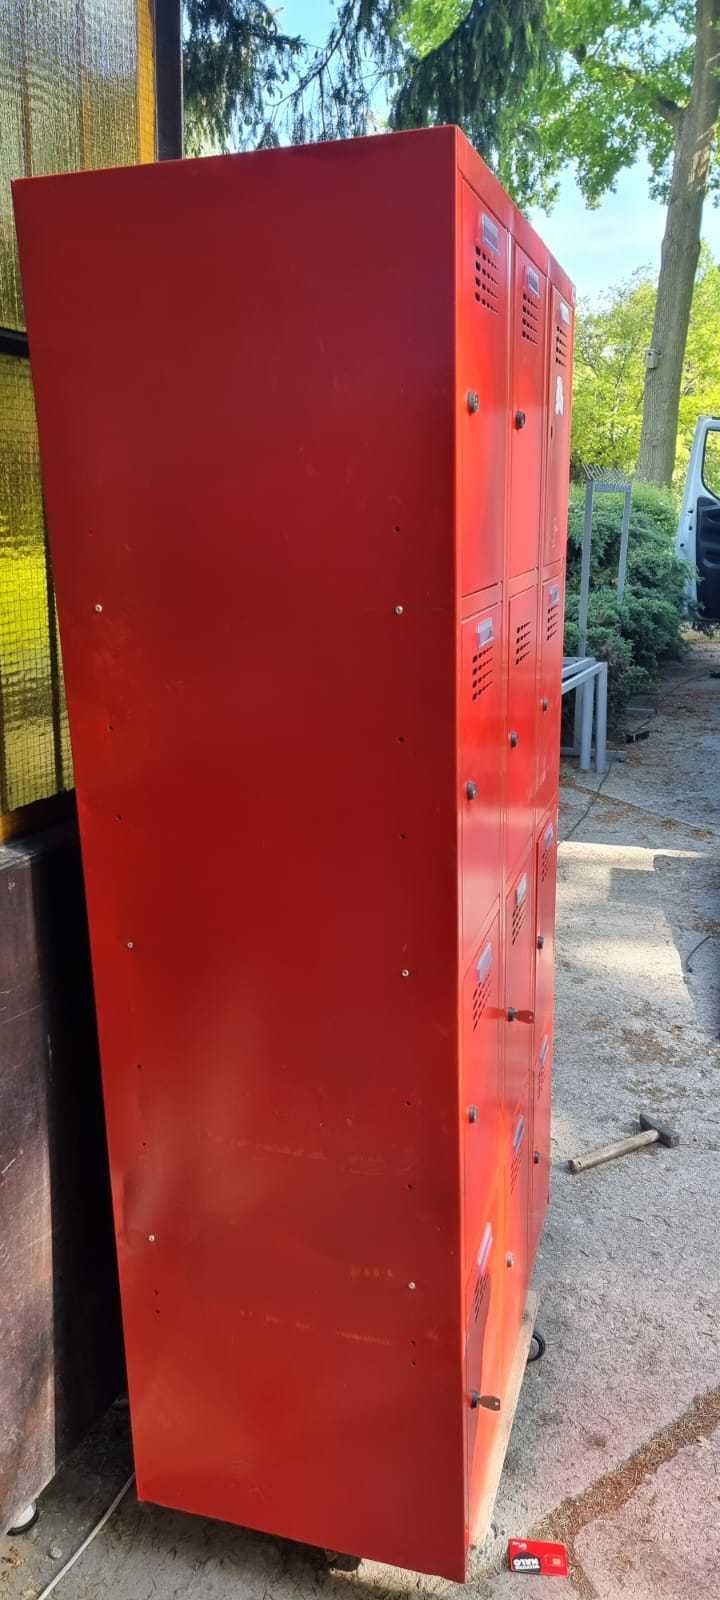 Szafa szafka pracownicza BHP metalowa czerwona 12 szafek MALAW